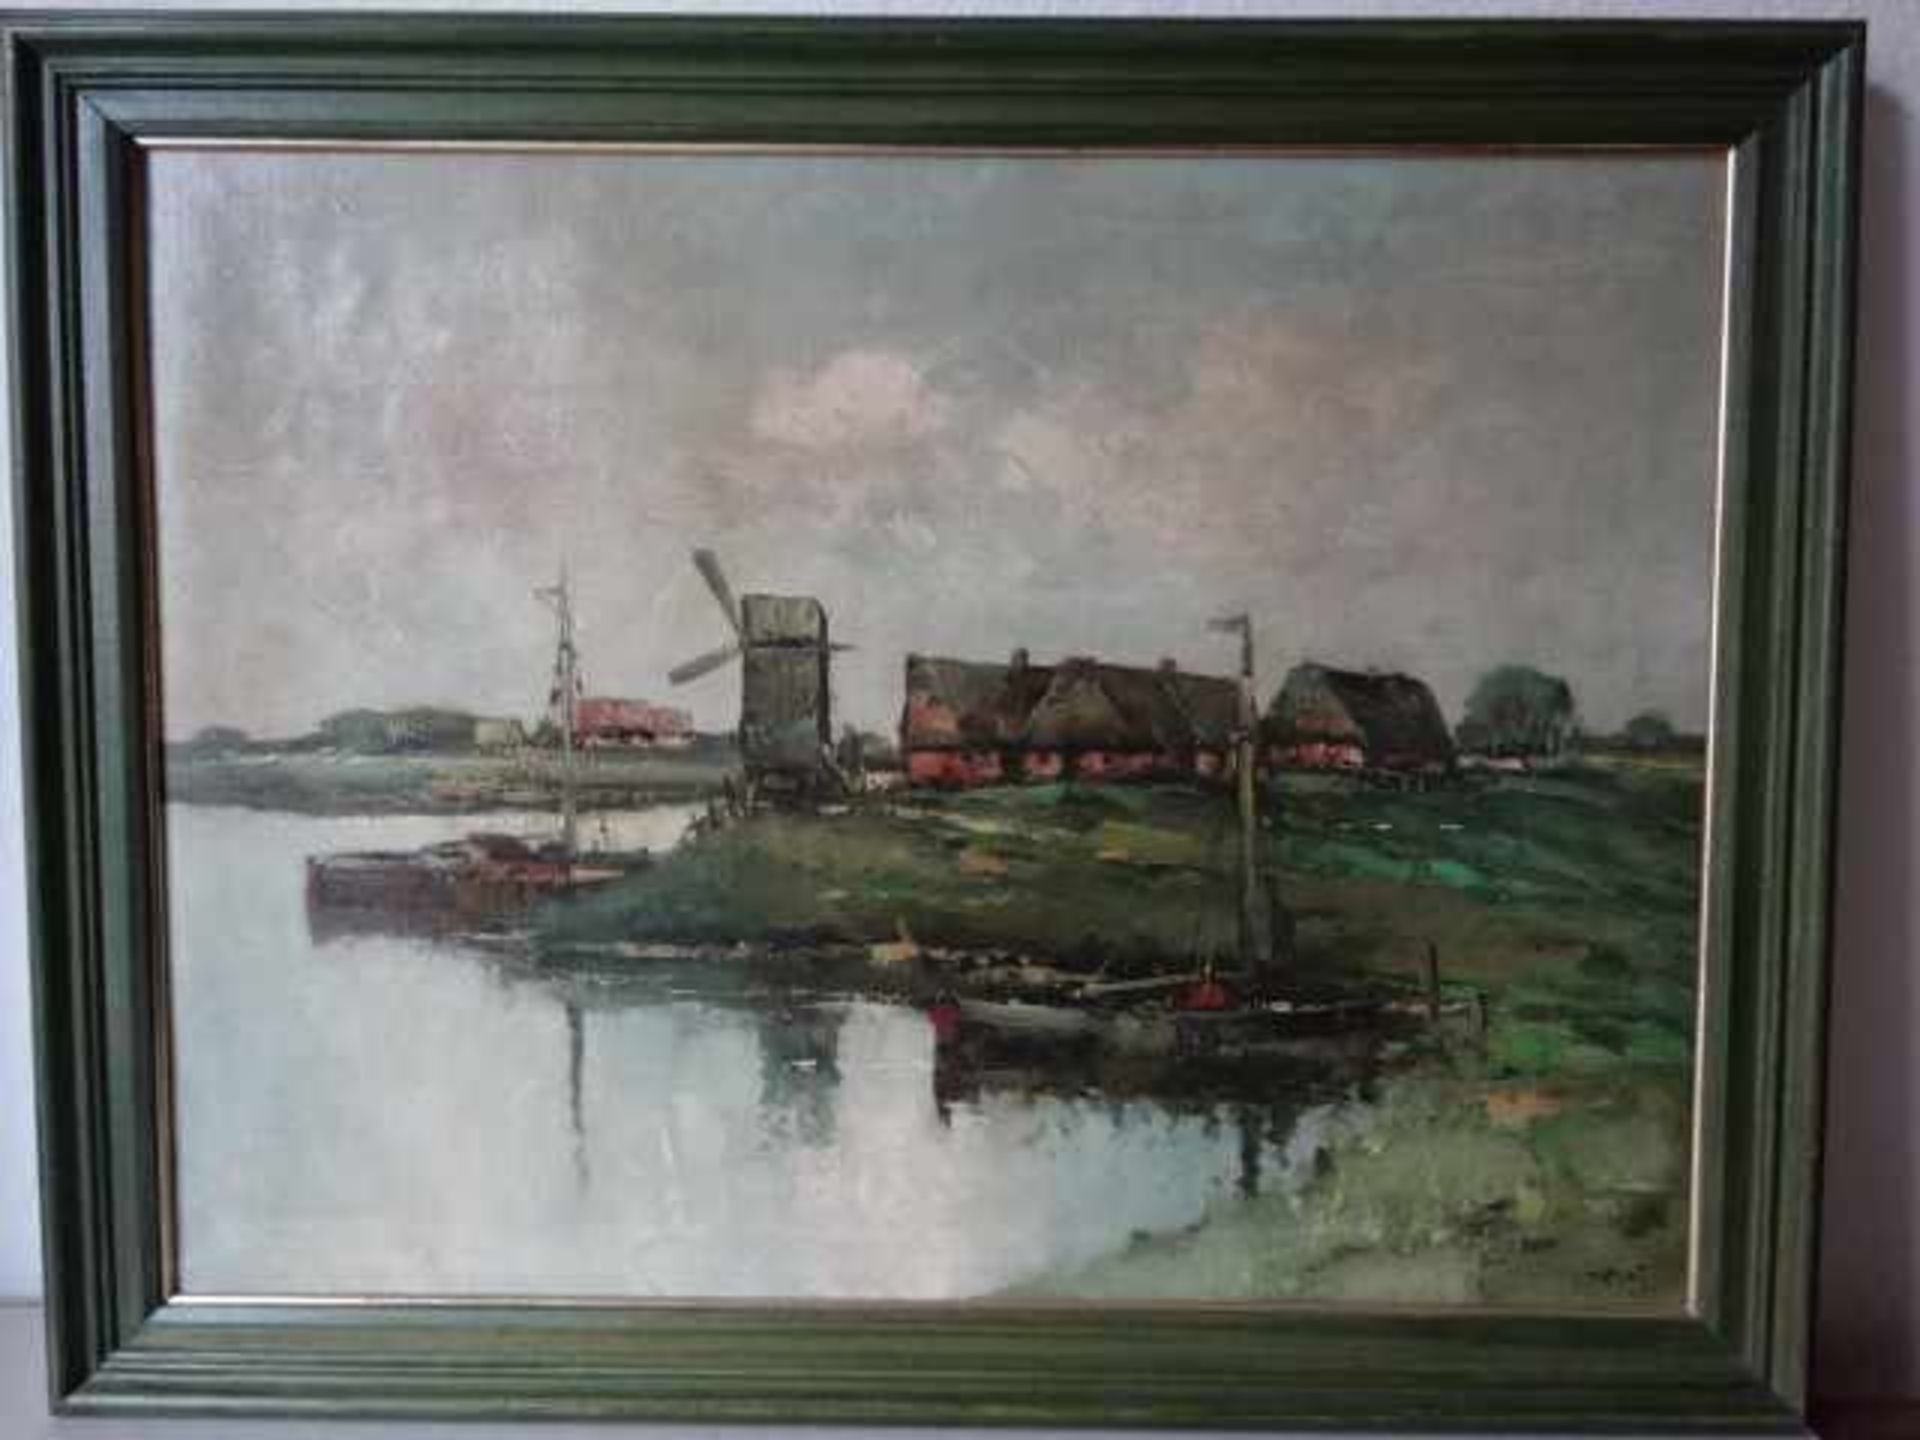 Wild, Otto (Trostberg 1898 - 1971). Windmühle am Wasser. Öl auf Leinwand, um 1930. Signiert. 56 x